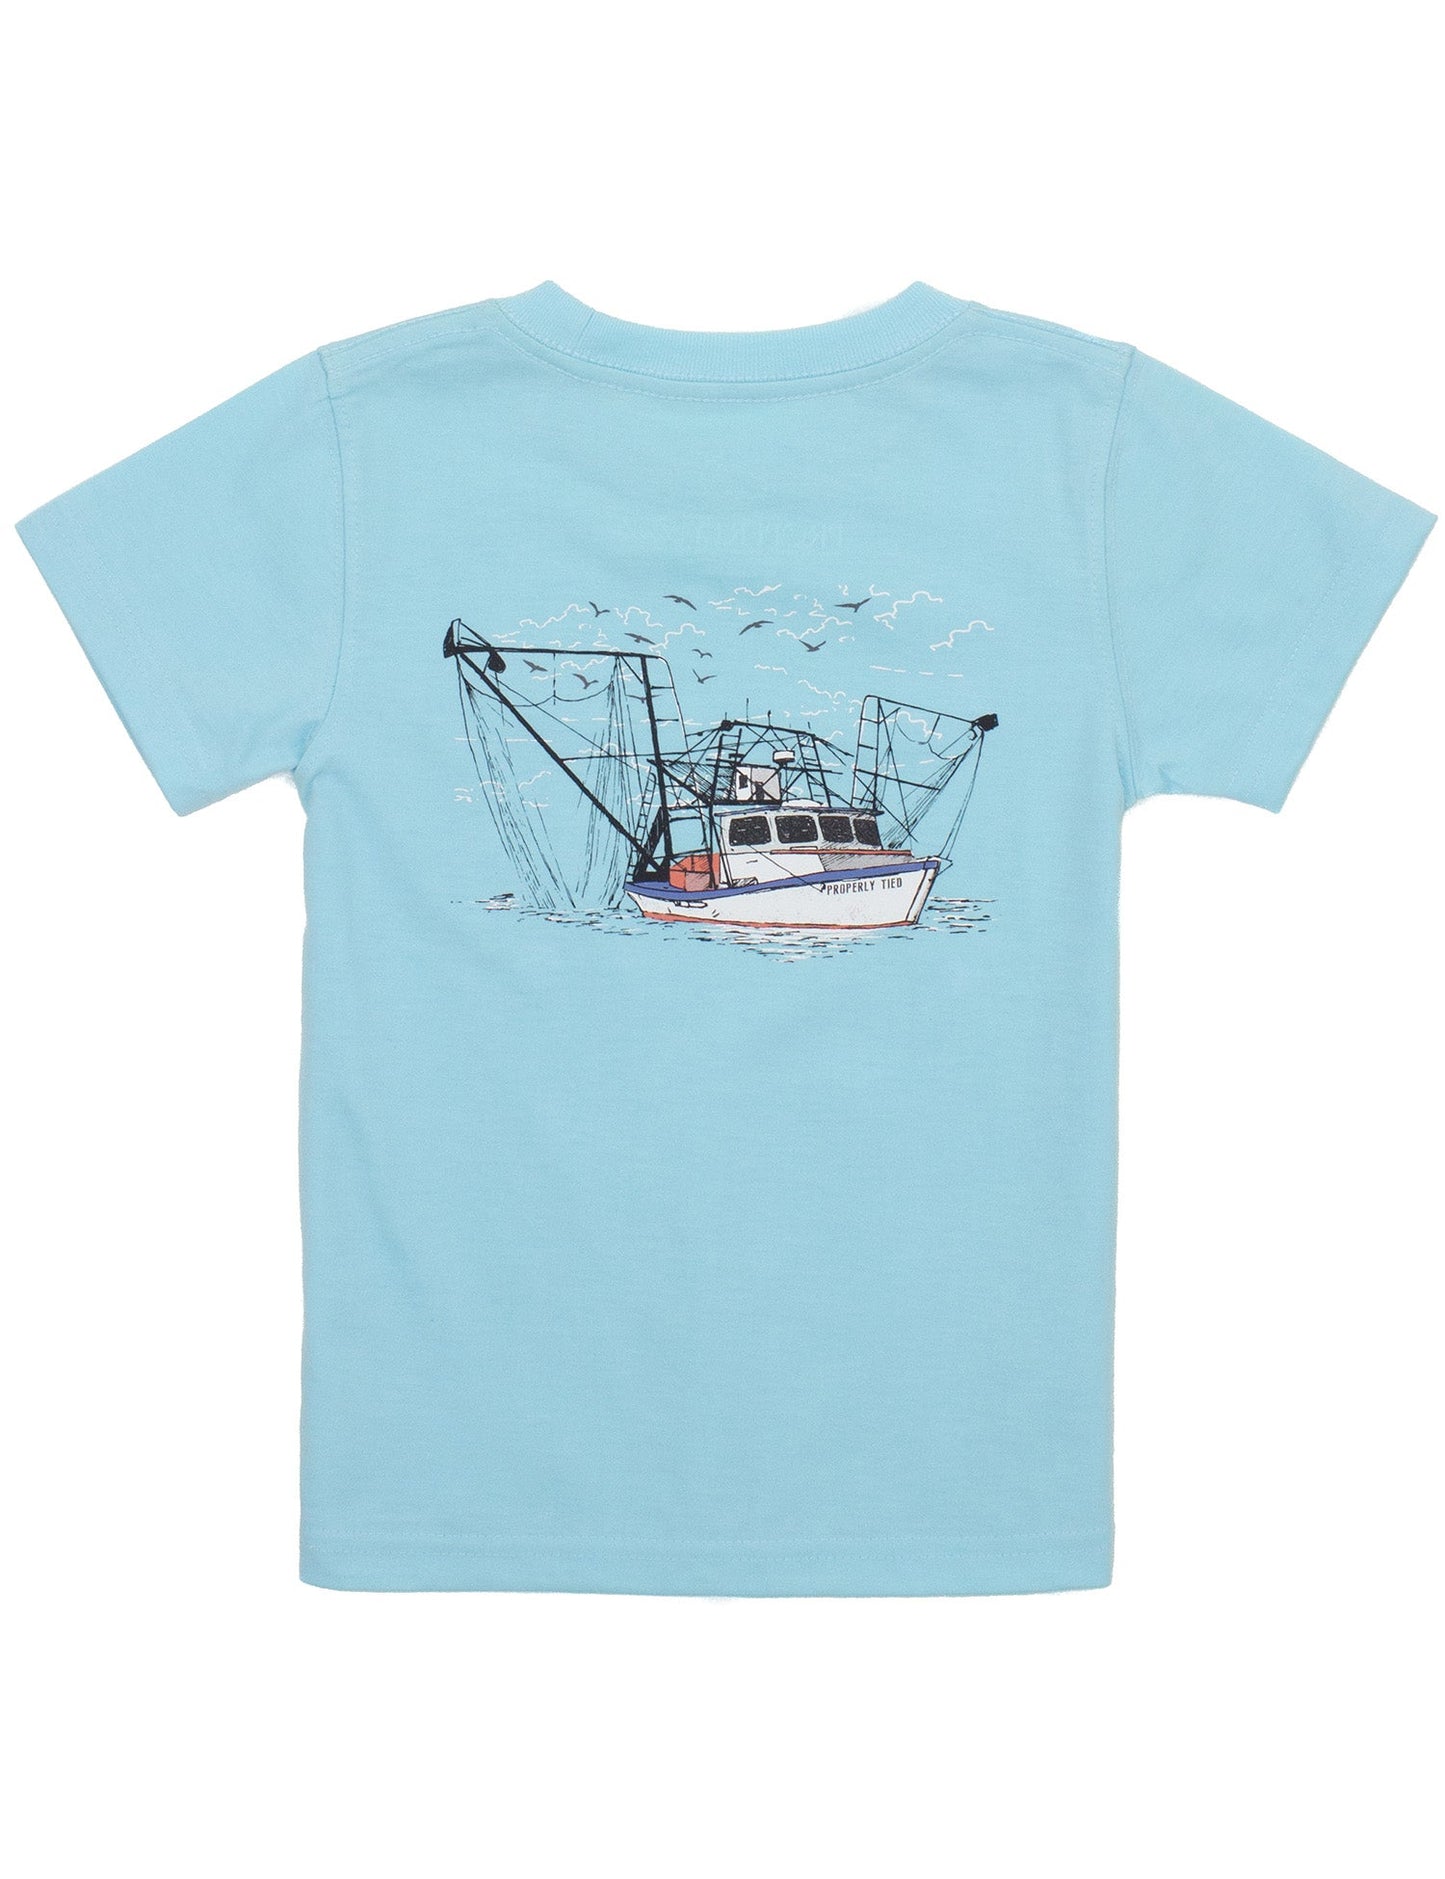 Boys Shrimp Boat Tee T-Shirt Powder Blue